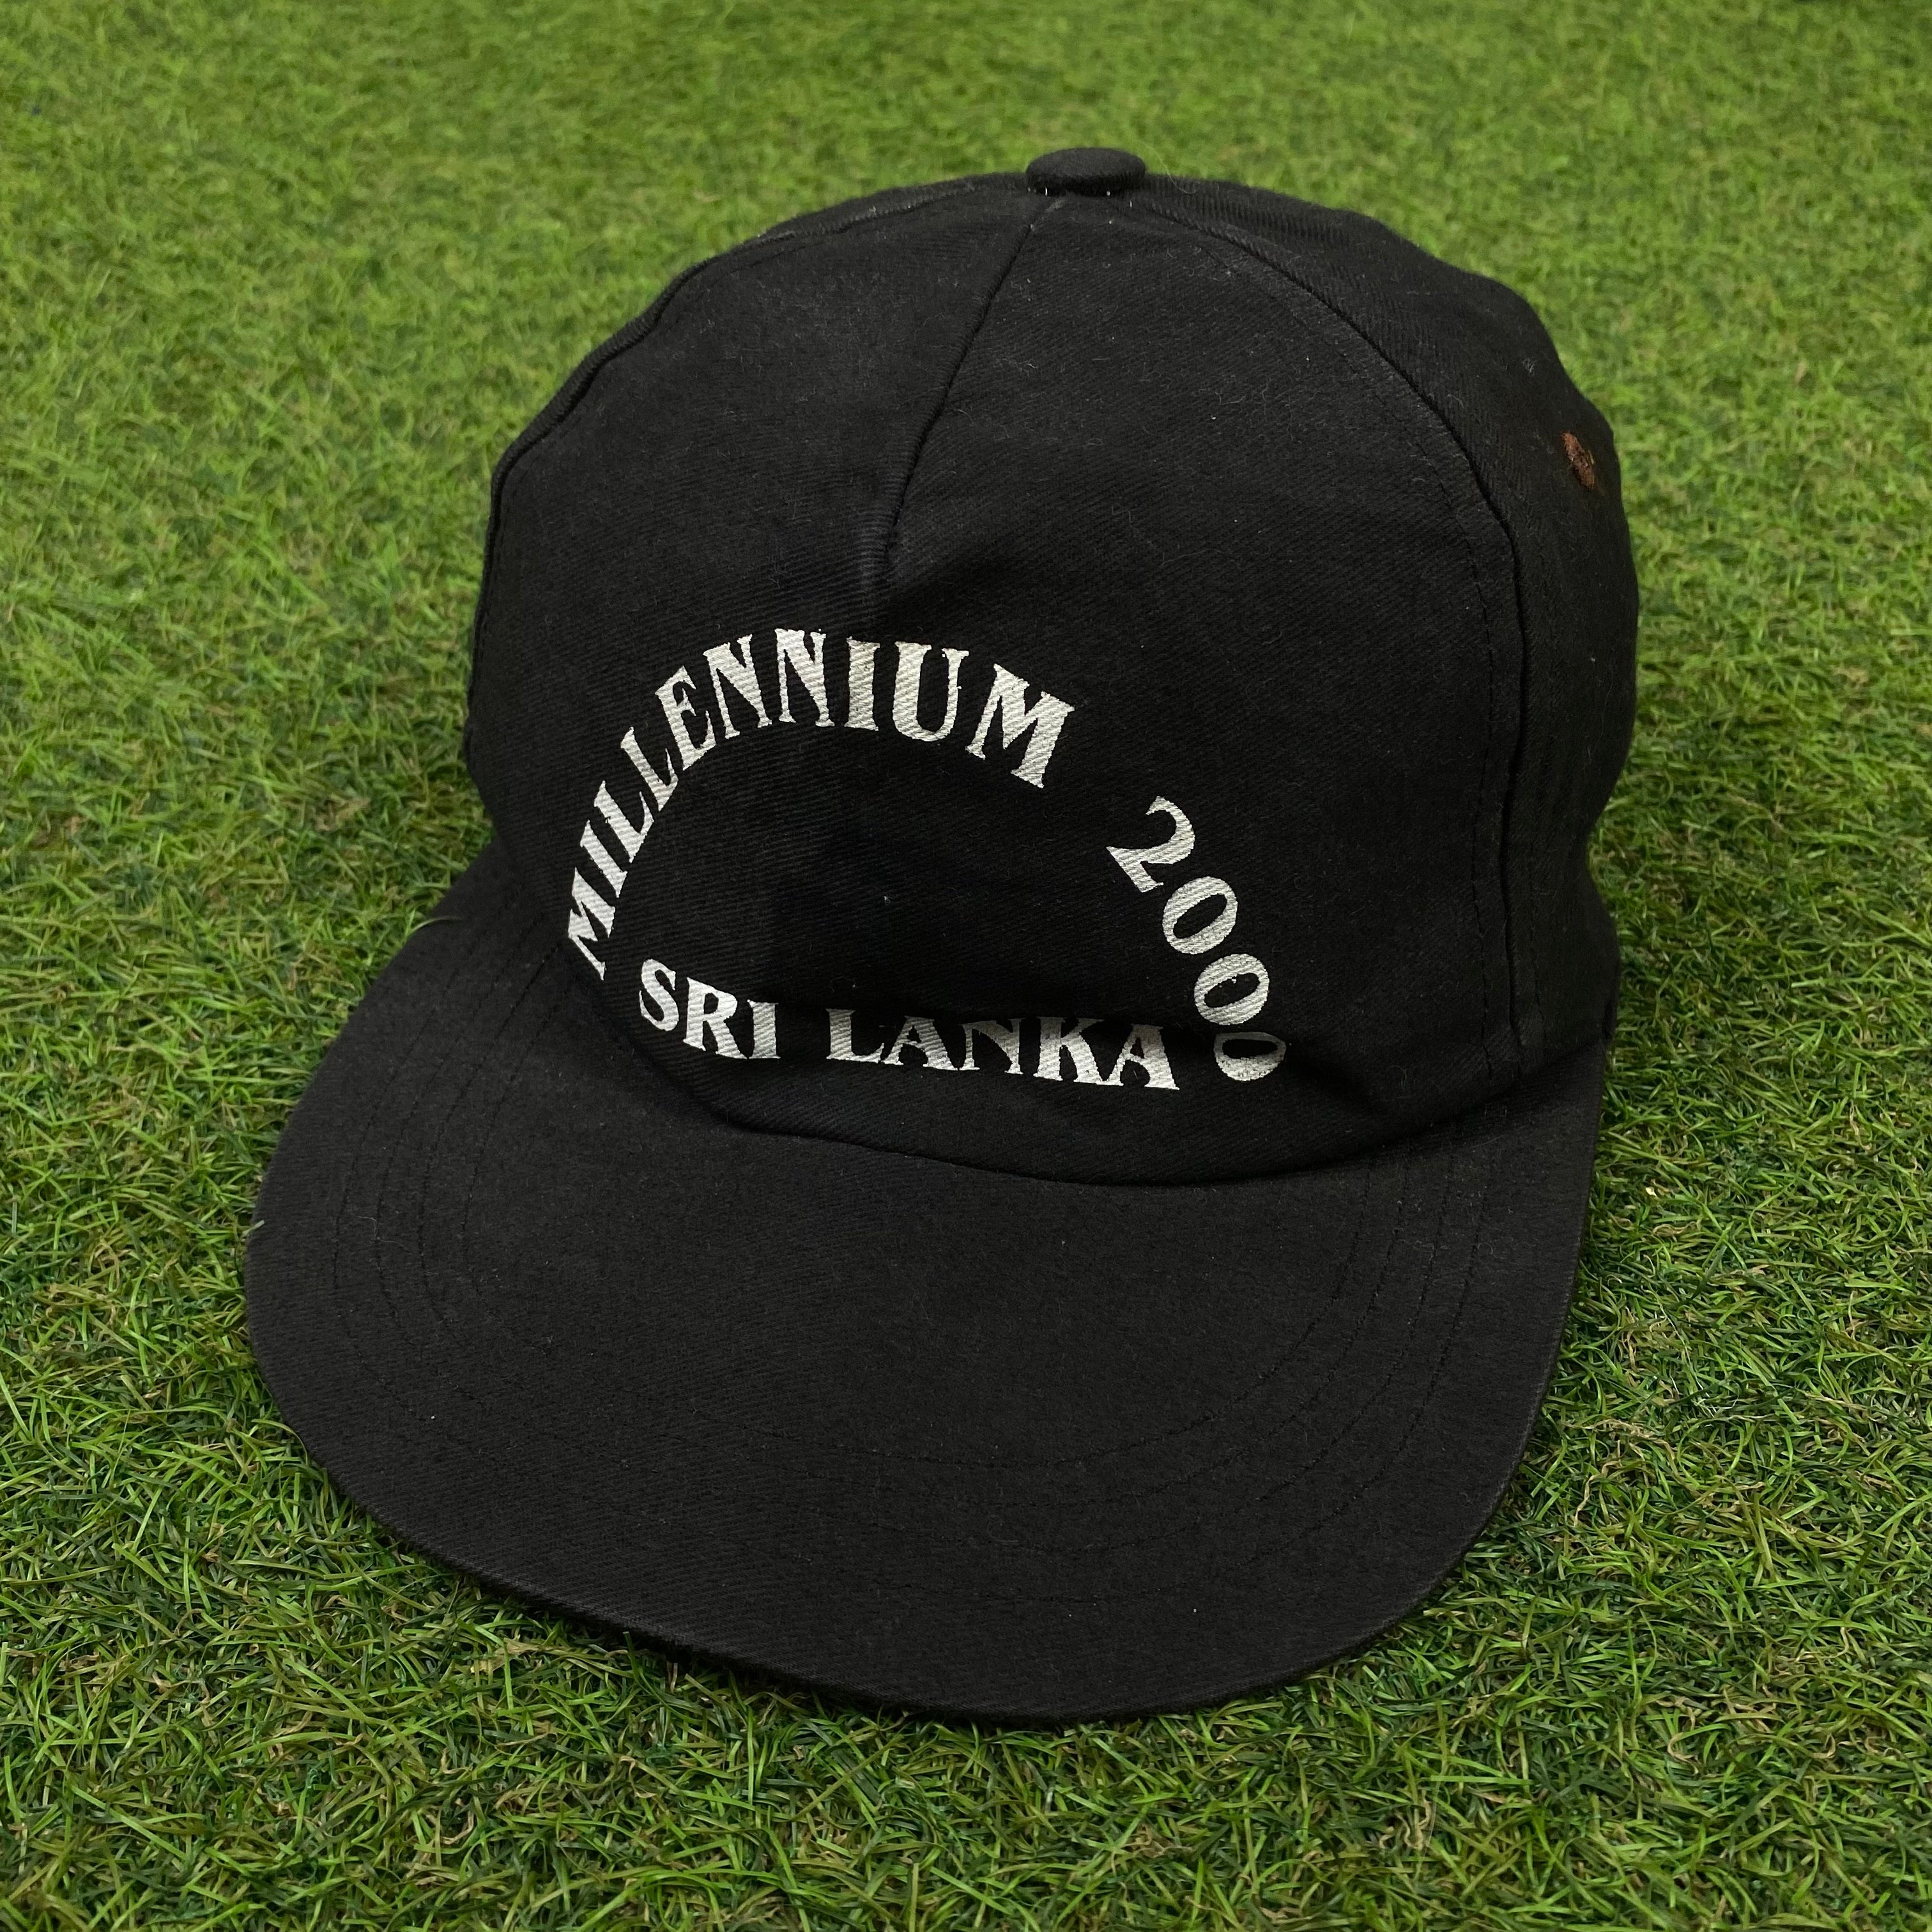 Retro 2000 Millennium Snapback Hat Black